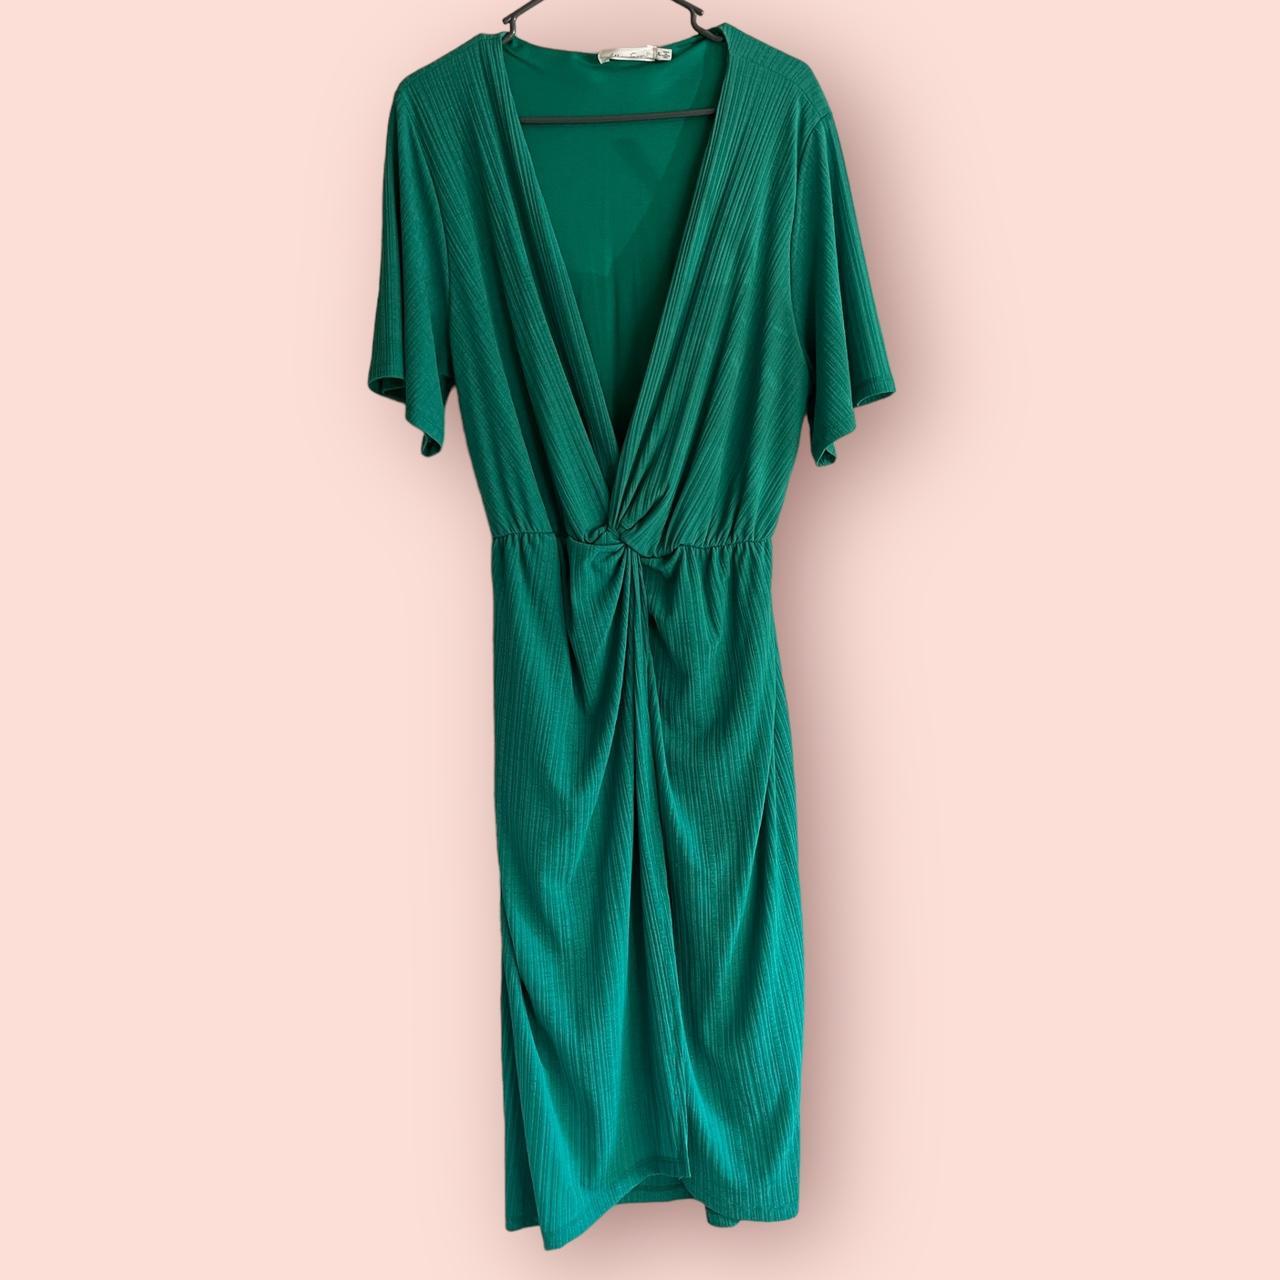 FAIRFAX & FAVOR Women's Green and Blue Dress